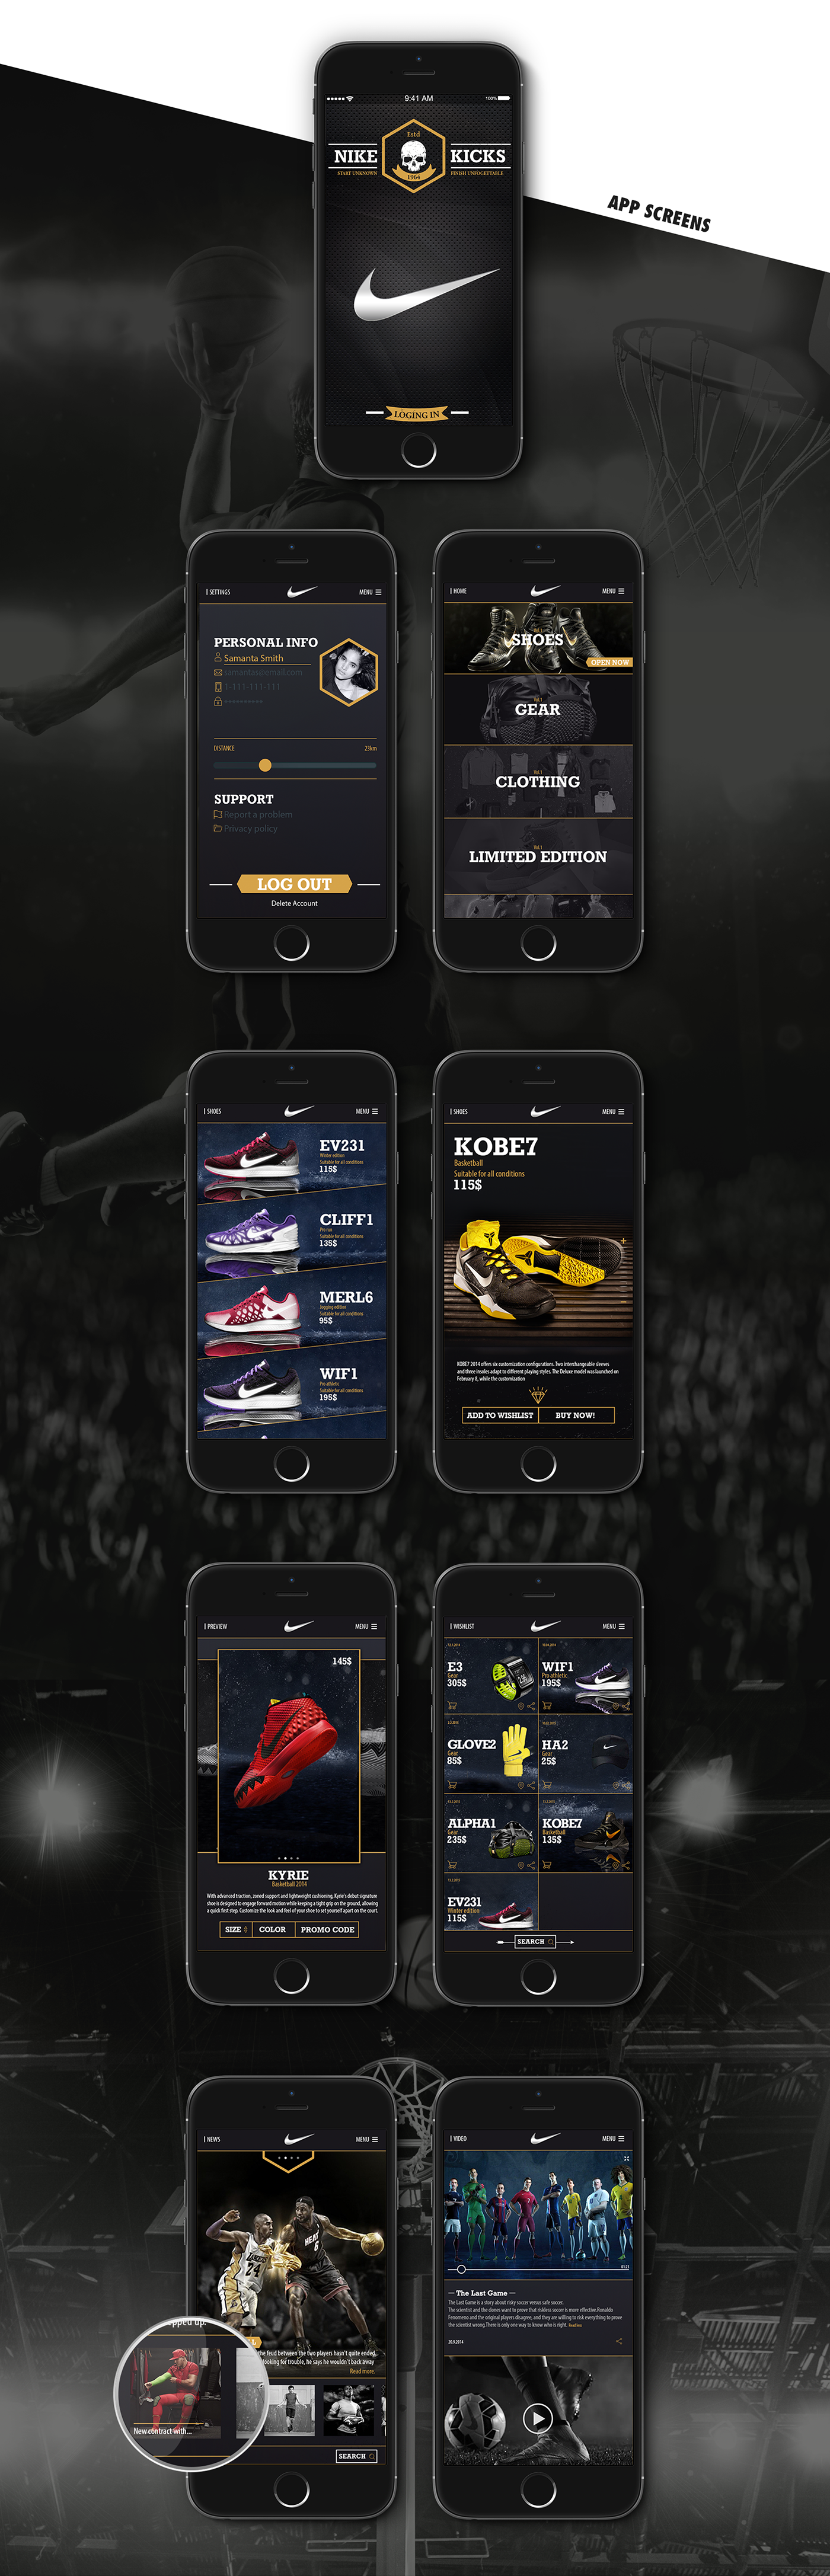 app mobile desktop IPHON6 apple Nike kicks design Platform slider navigation UI ux Web shoes